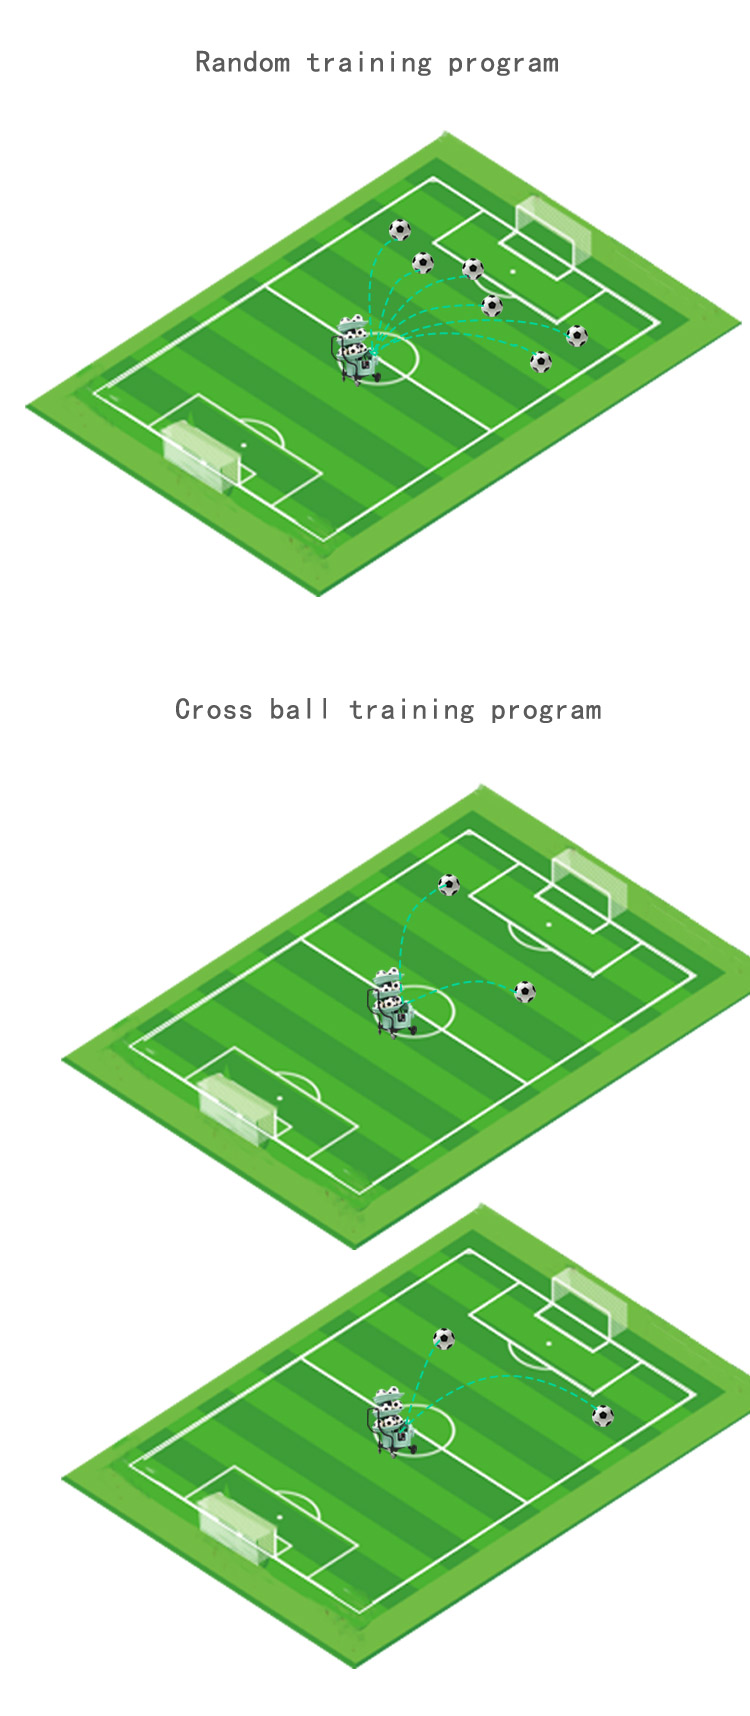 Siboasi Futbol/Futbol Eğitimi/Koçluk/Öğretim Makinesi Çin'de Yapıldı S6526